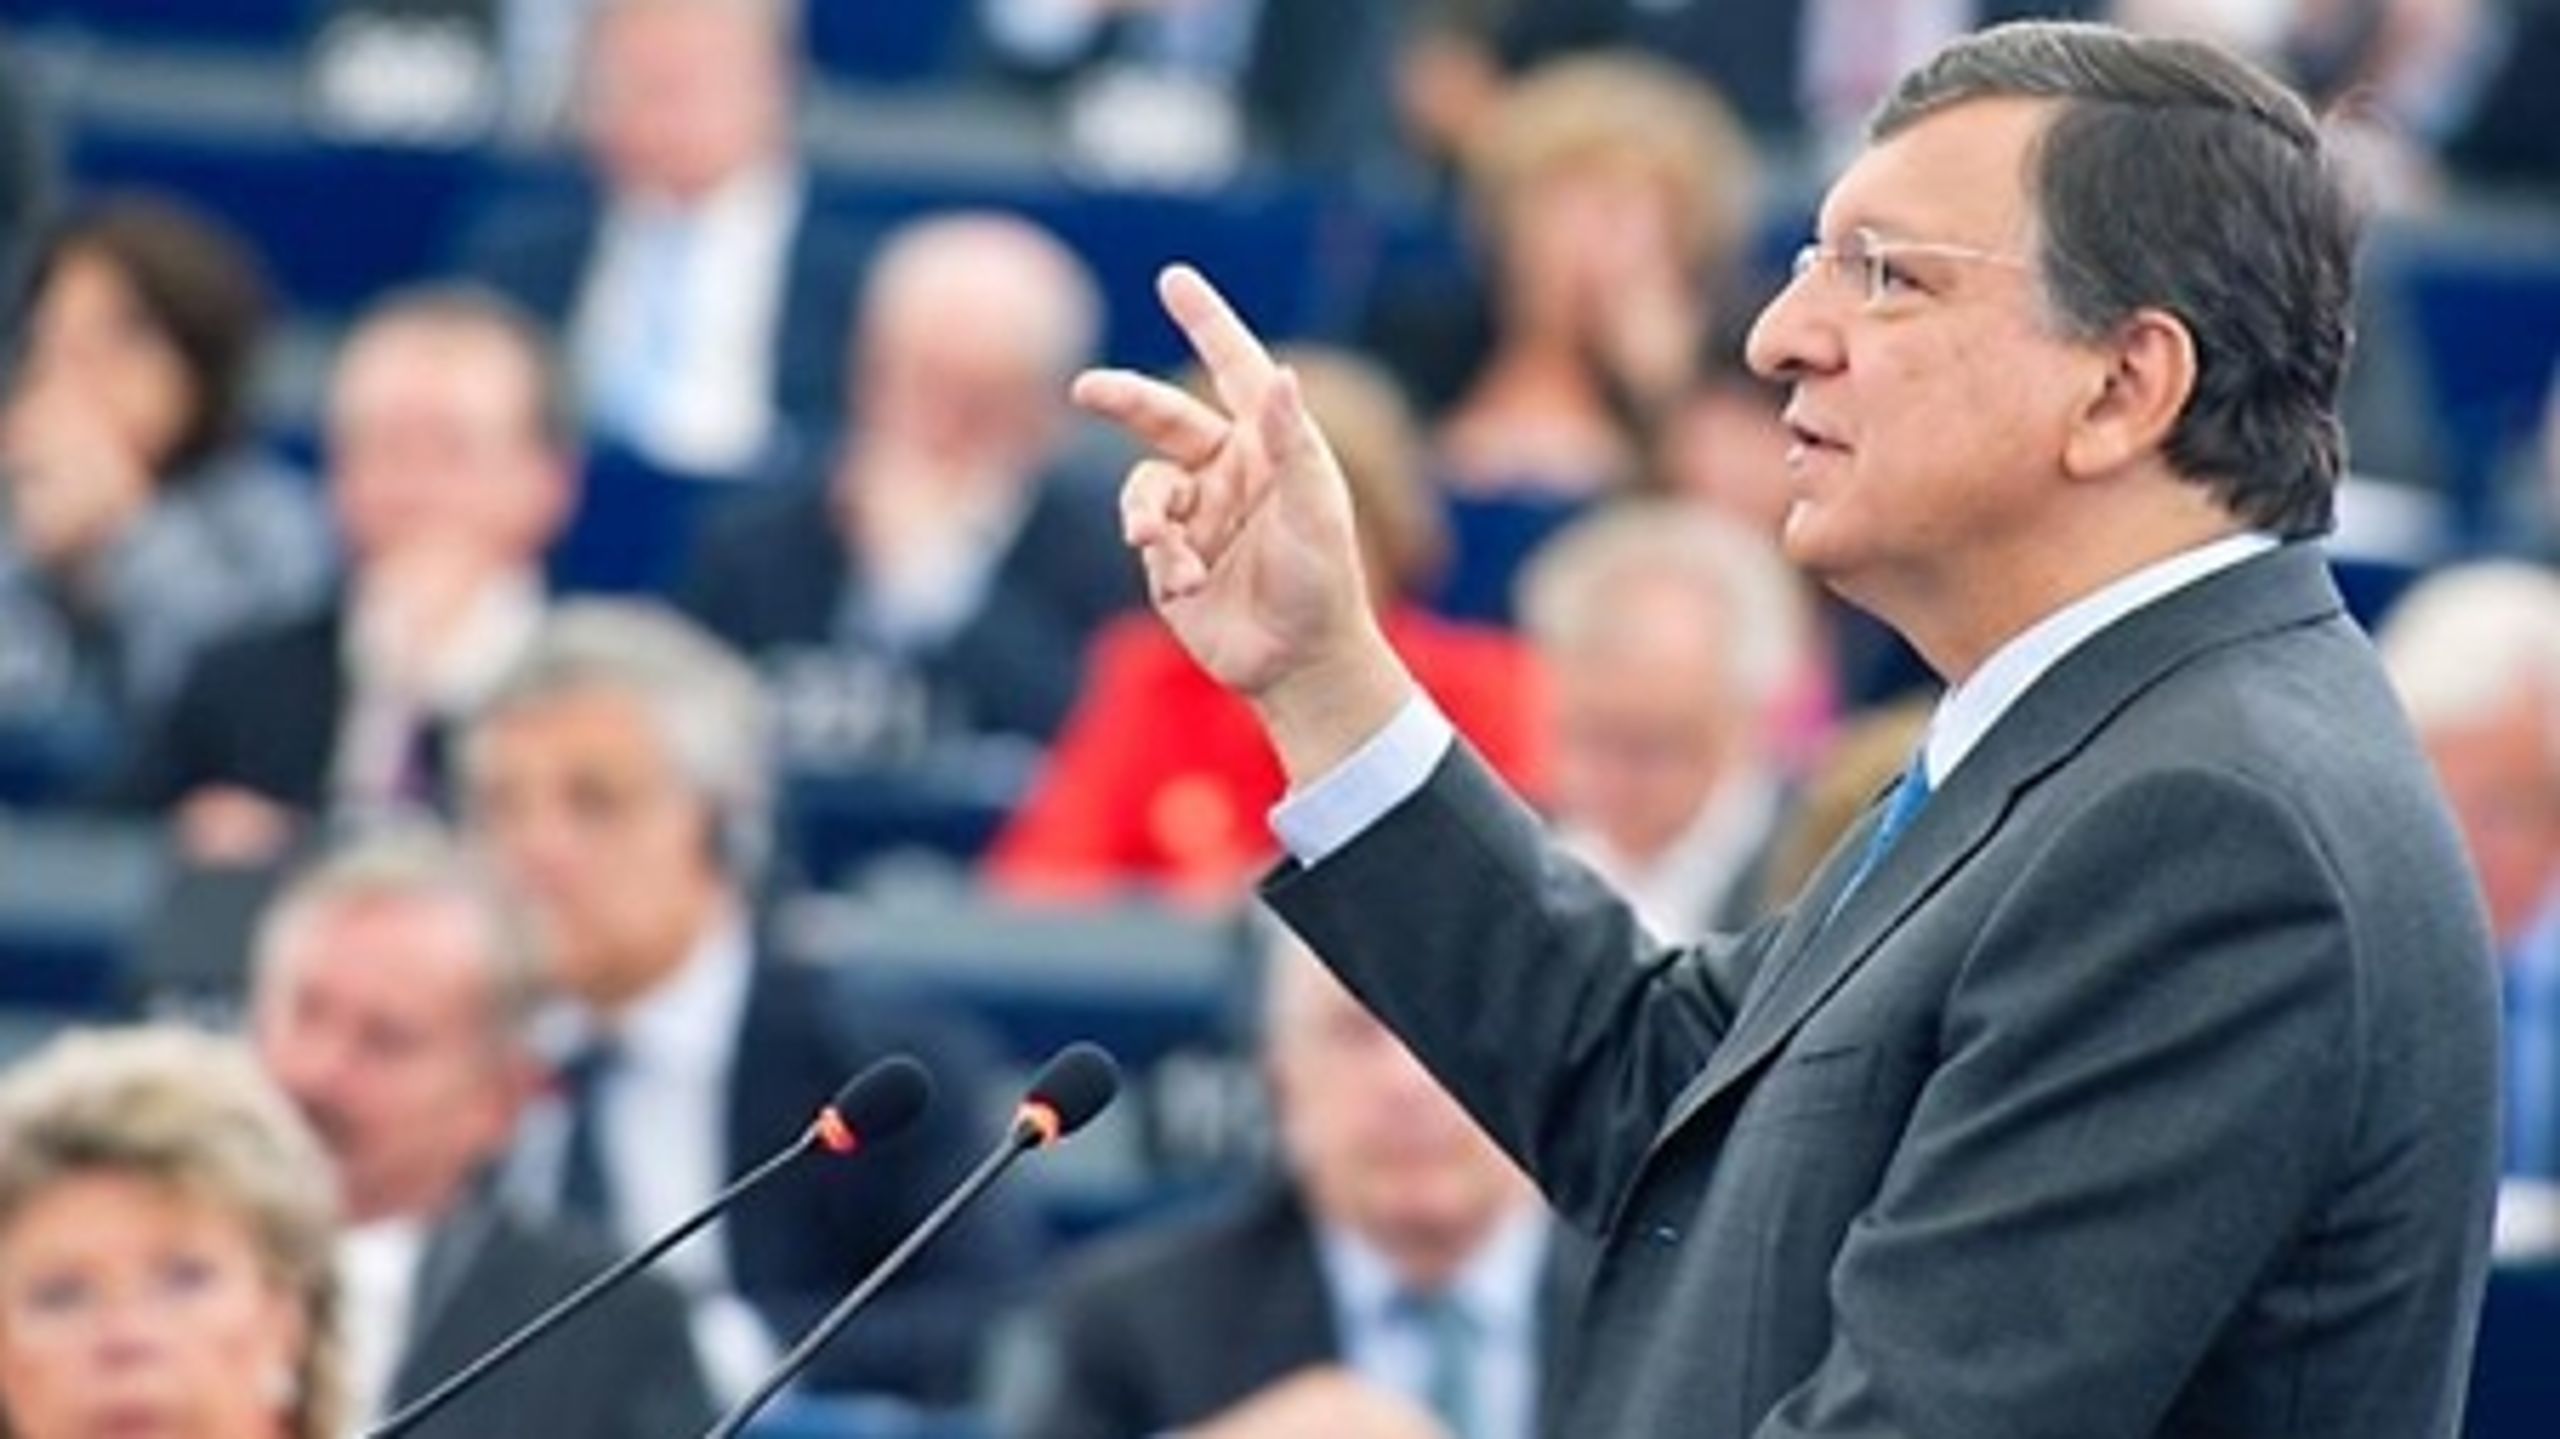 Når der skal findes en afløser til Barroso, behøves ingen dansk kandidat, mener de danske europapalamentarikere.